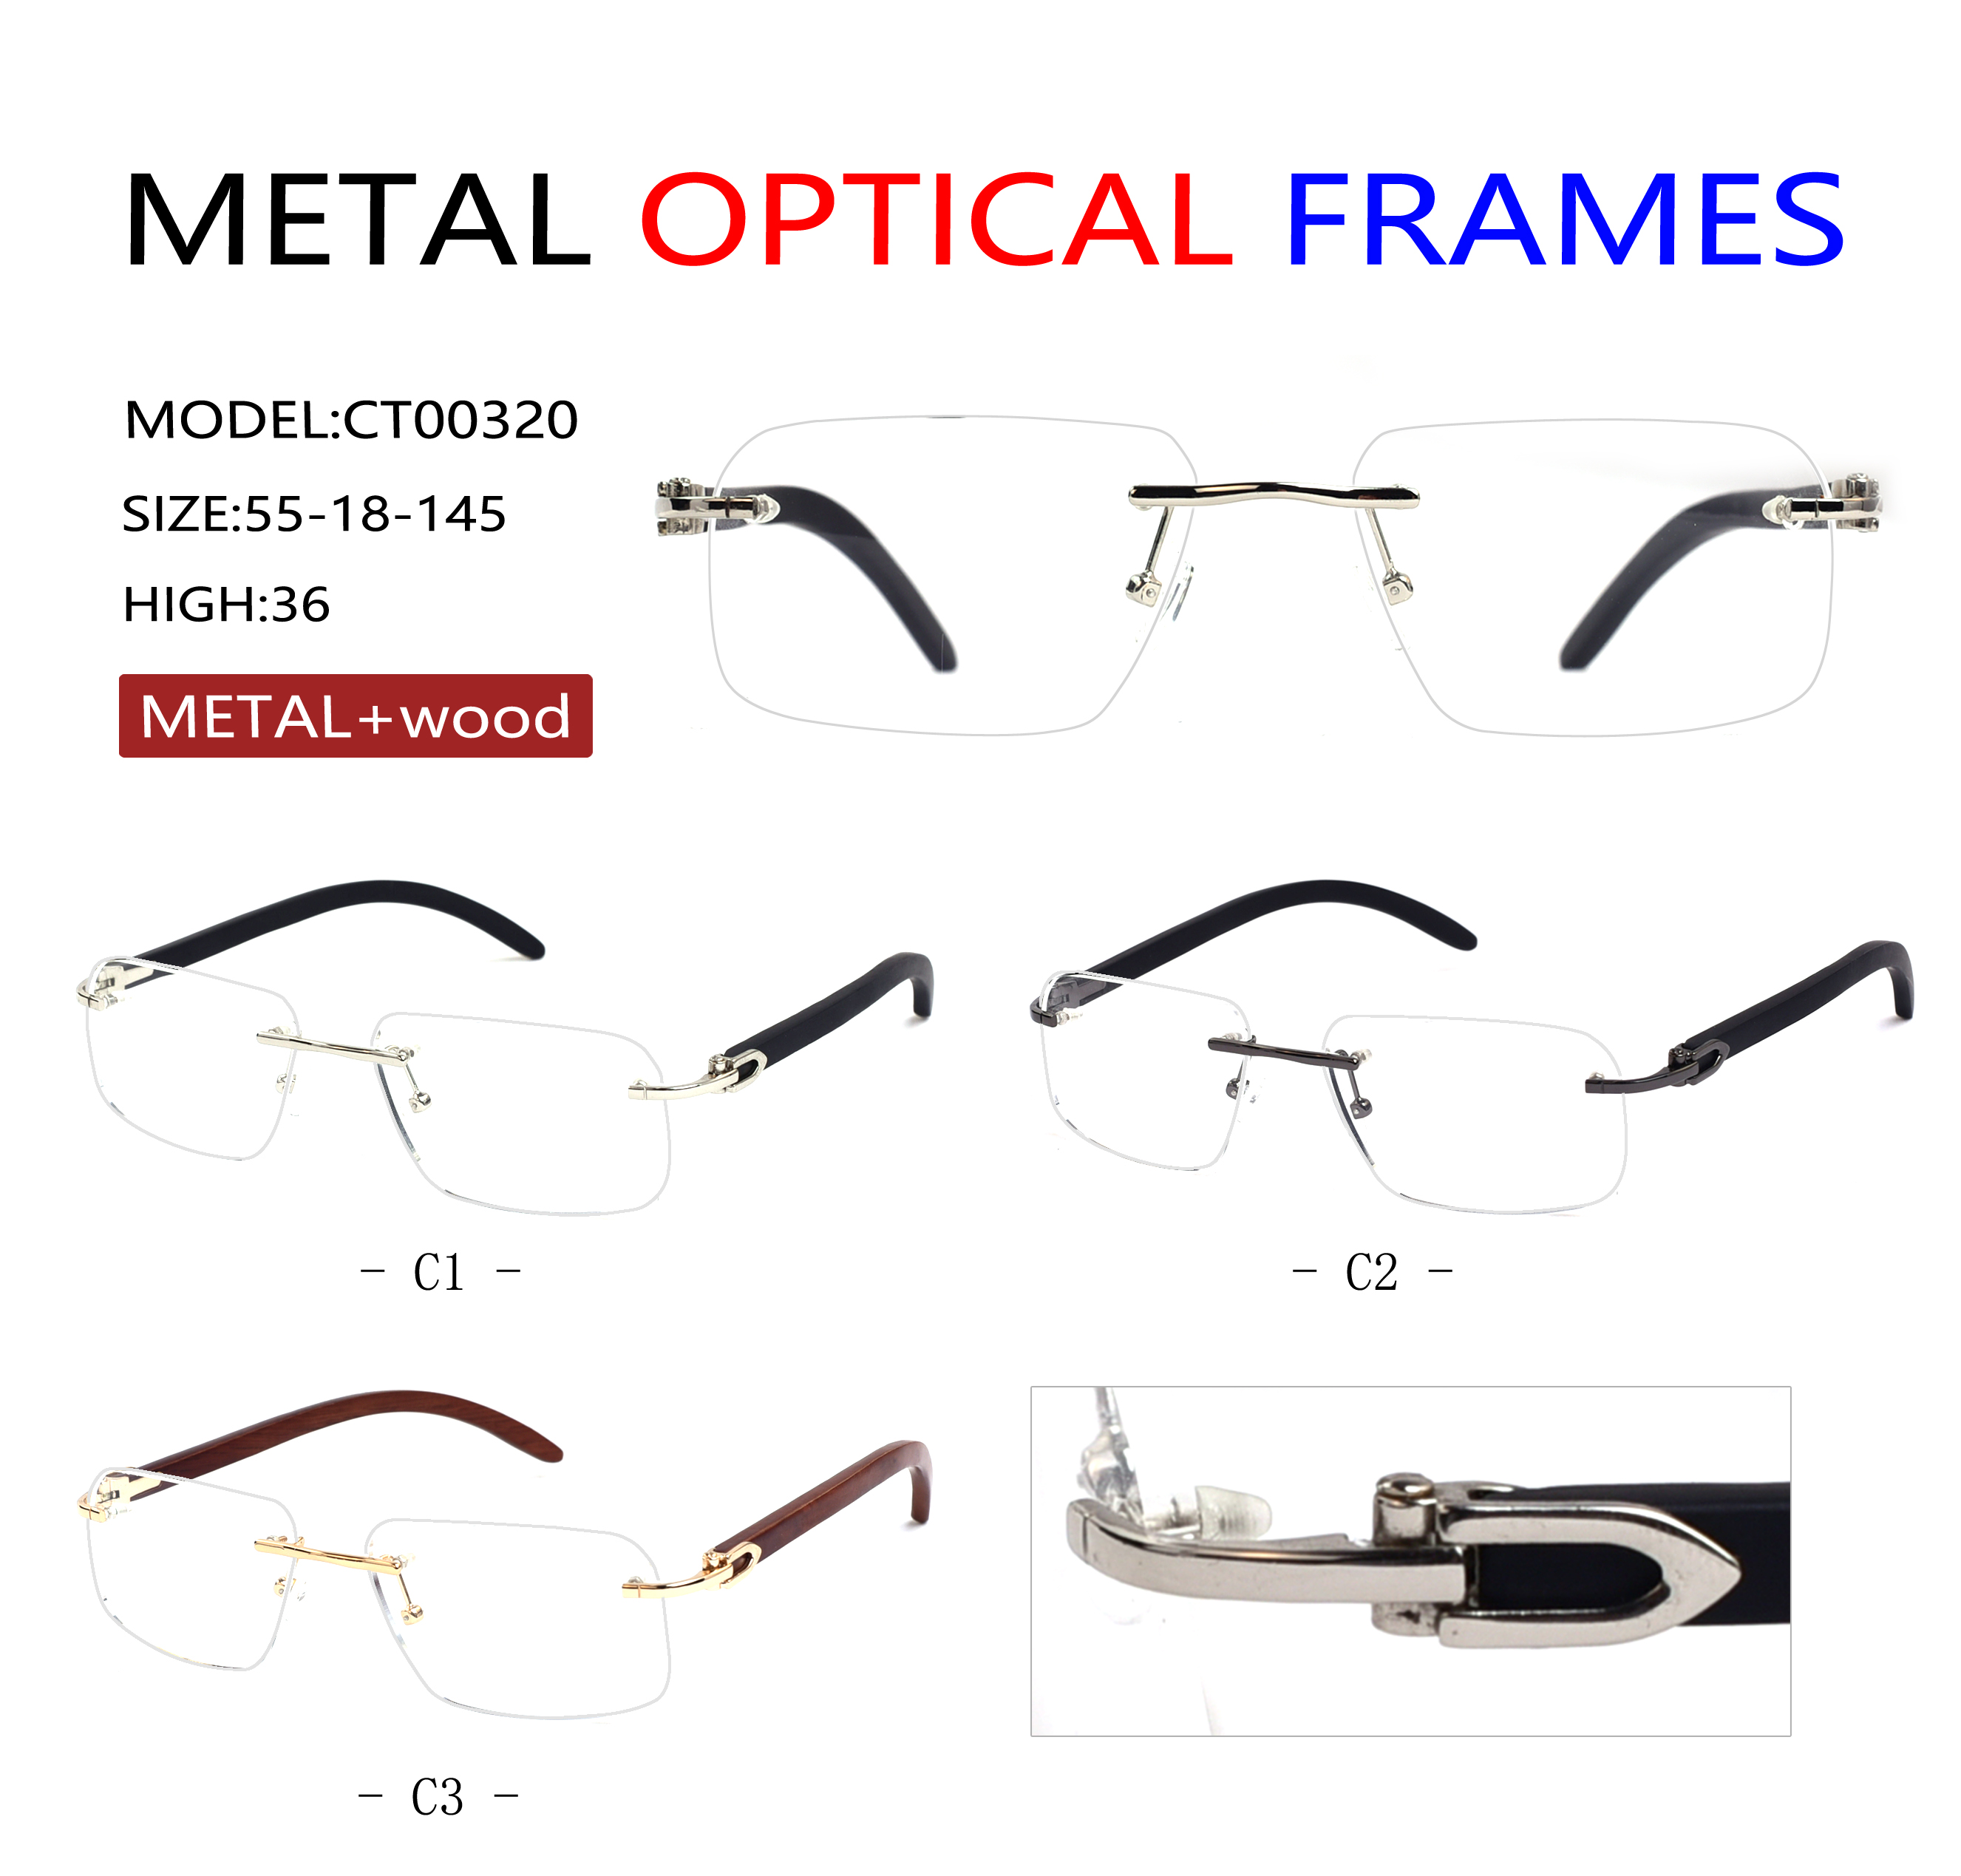 RIMLESS optical frames